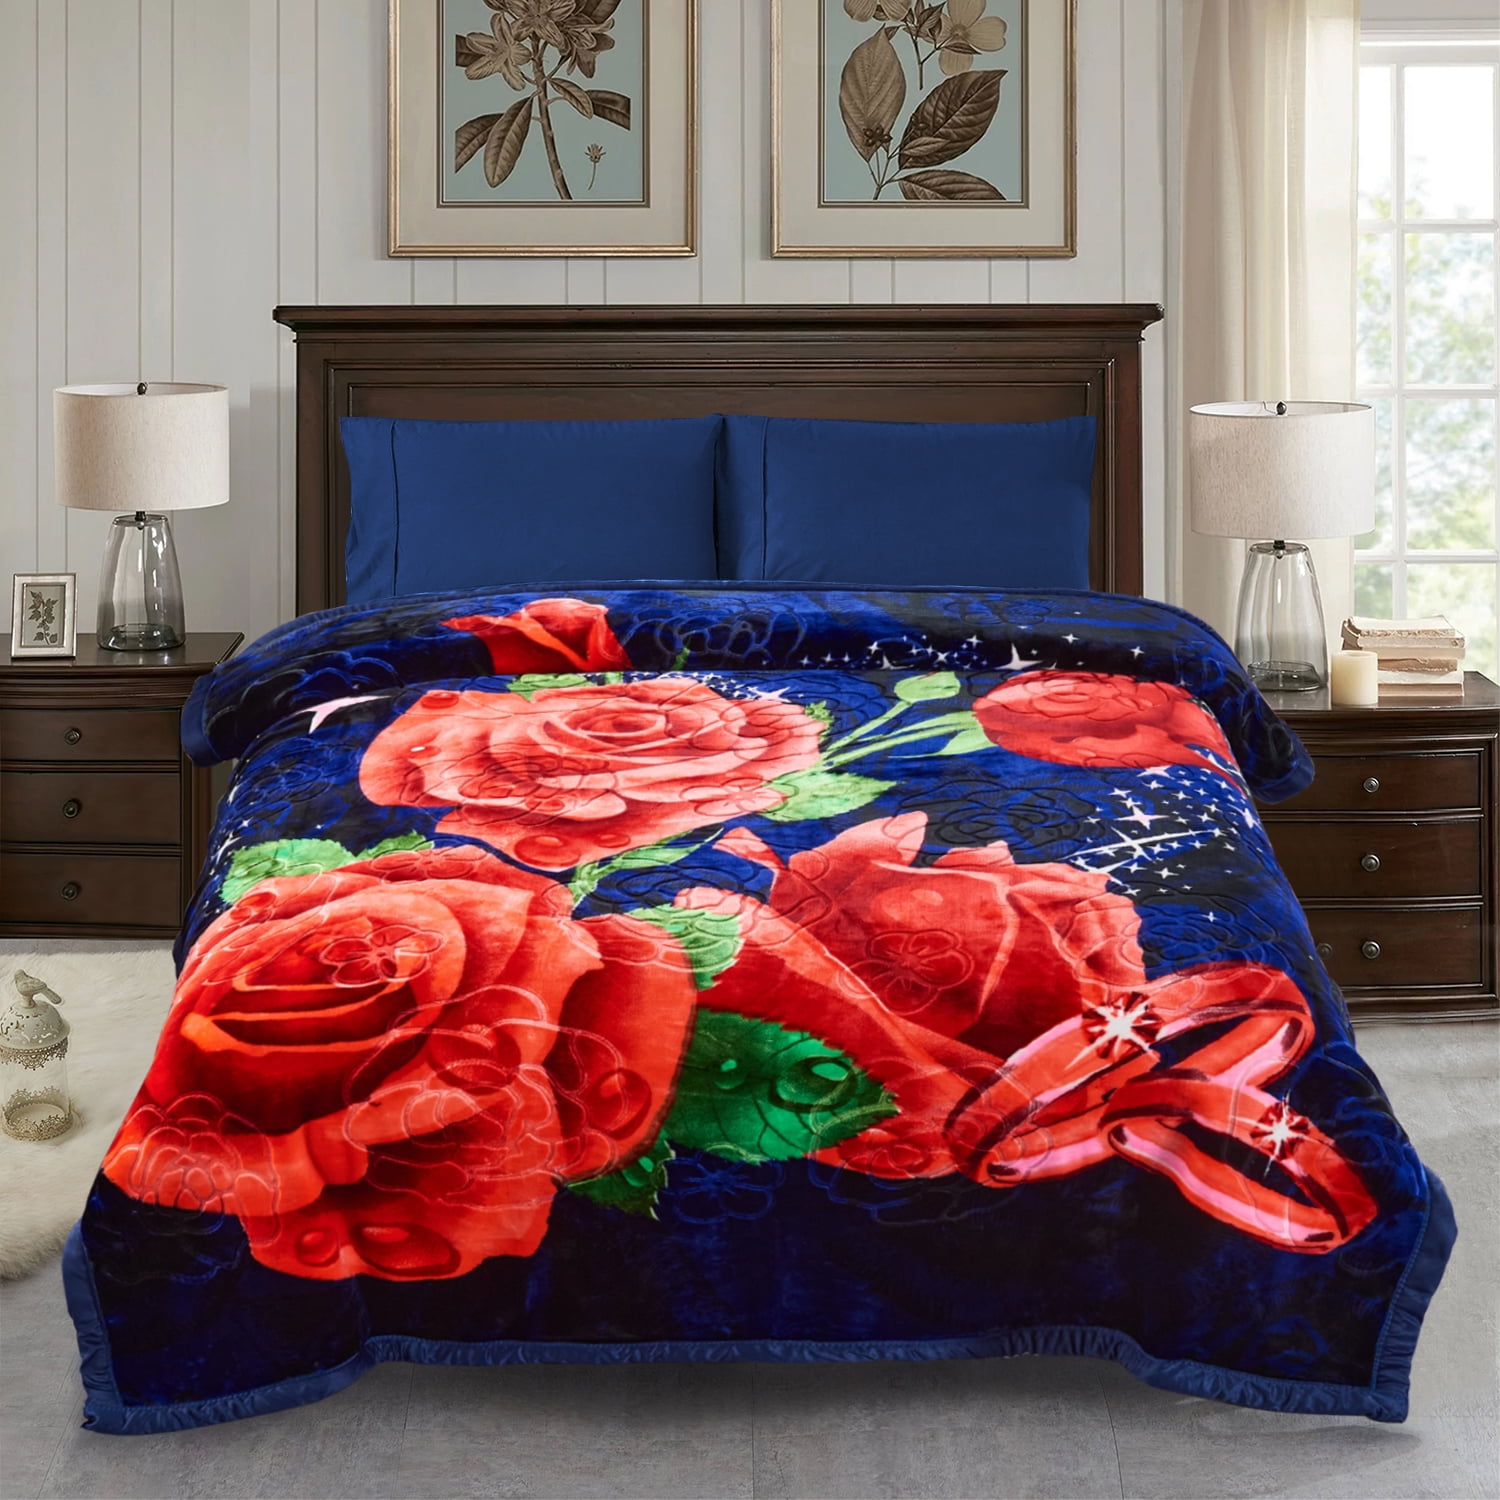 Jml Queen Fleece Bed Blanket,2 Ply Heavy Thick Mink Warm Blanket for Winter